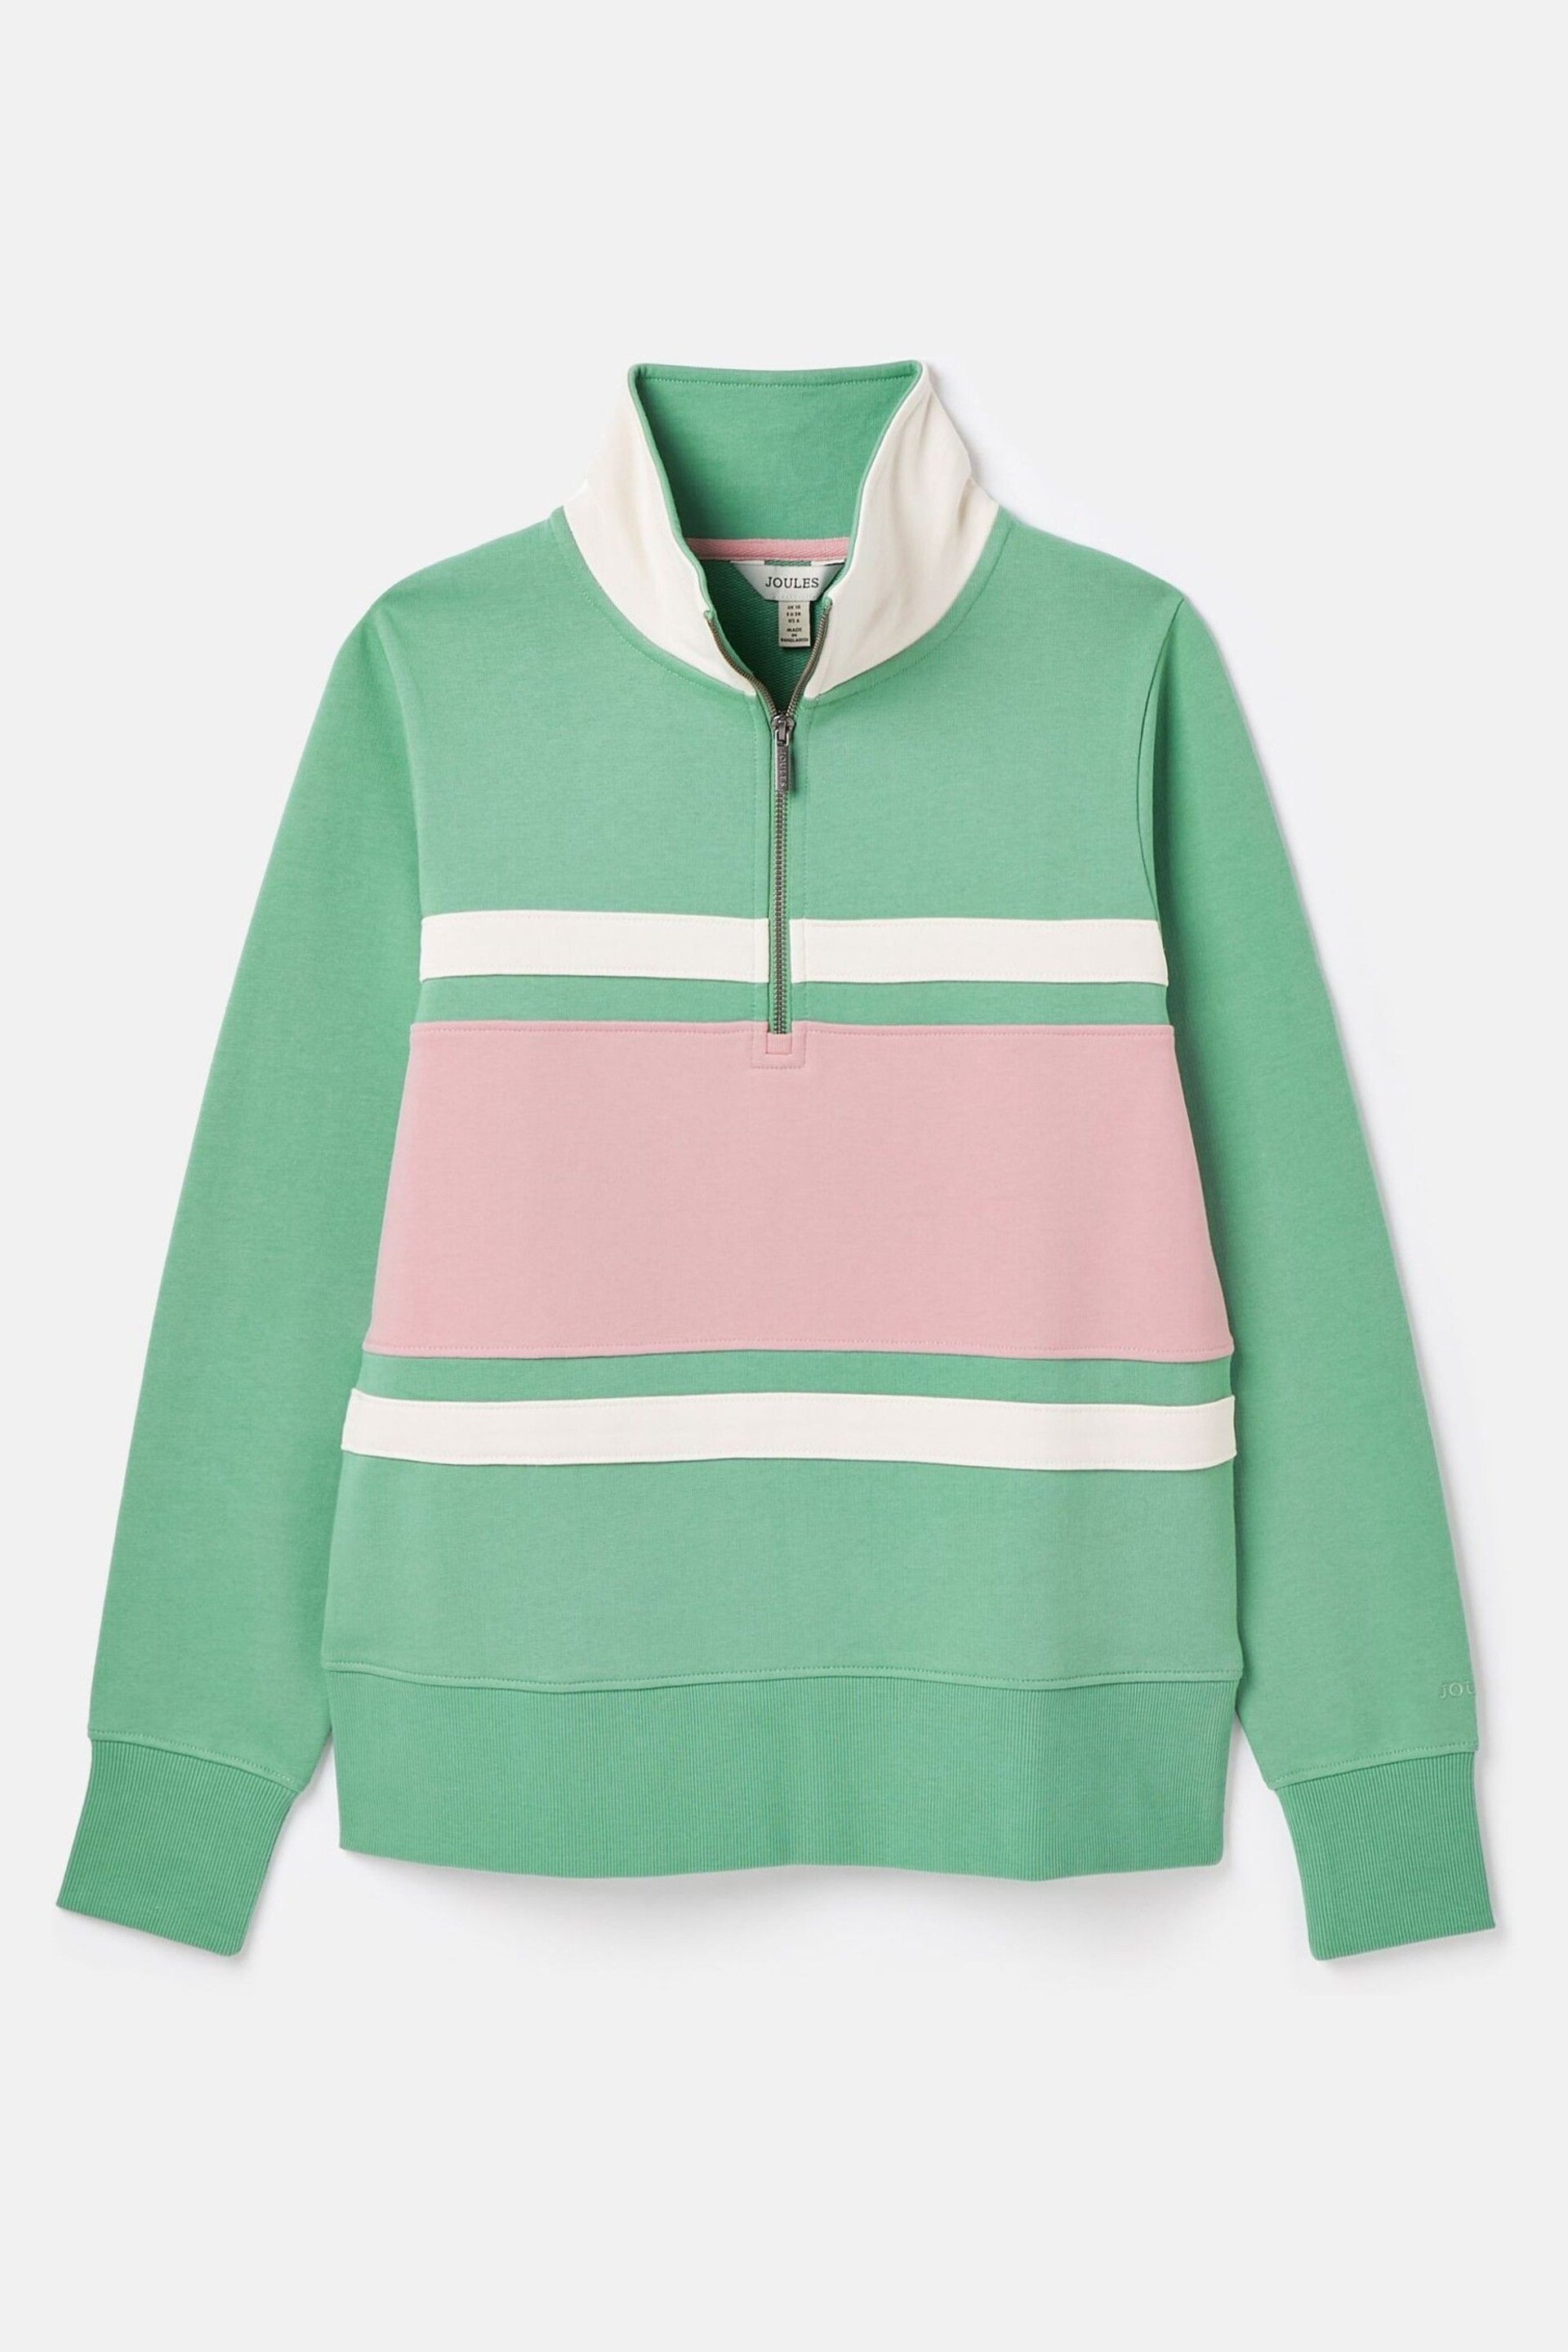 Joules Tadley Green & Pink Quarter Zip Sweatshirt - Image 7 of 7